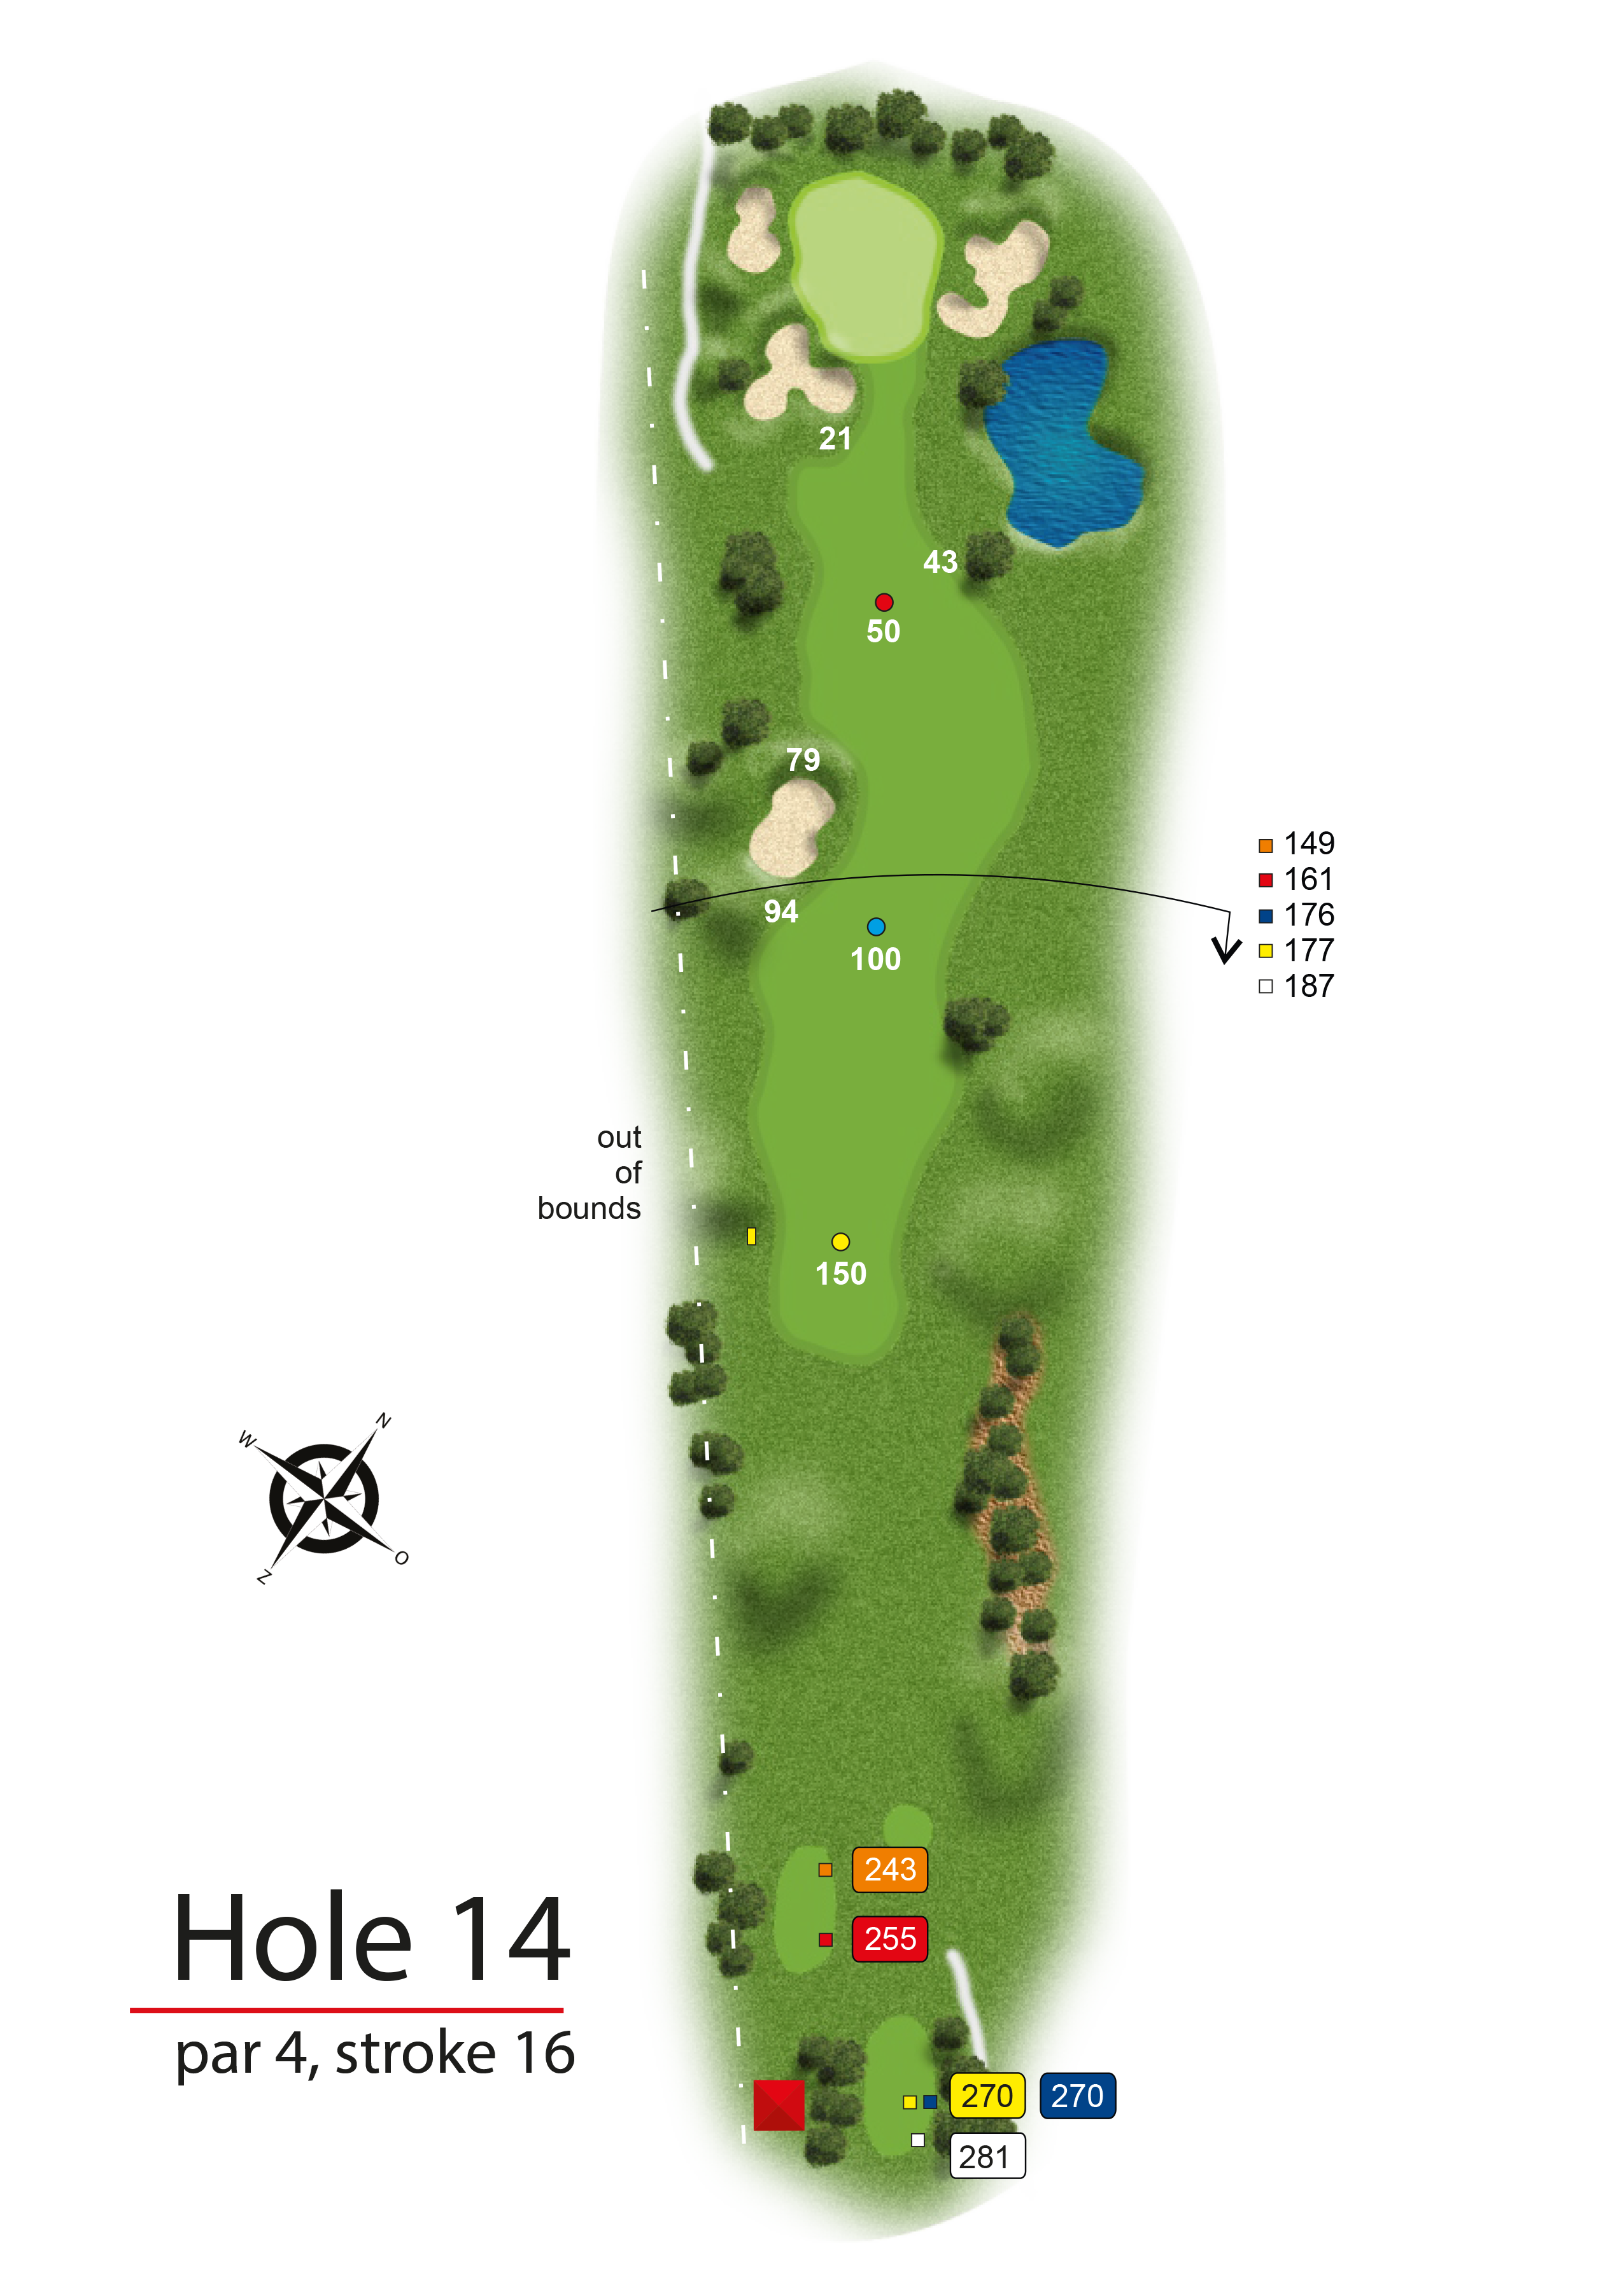 Hole 14 - simple